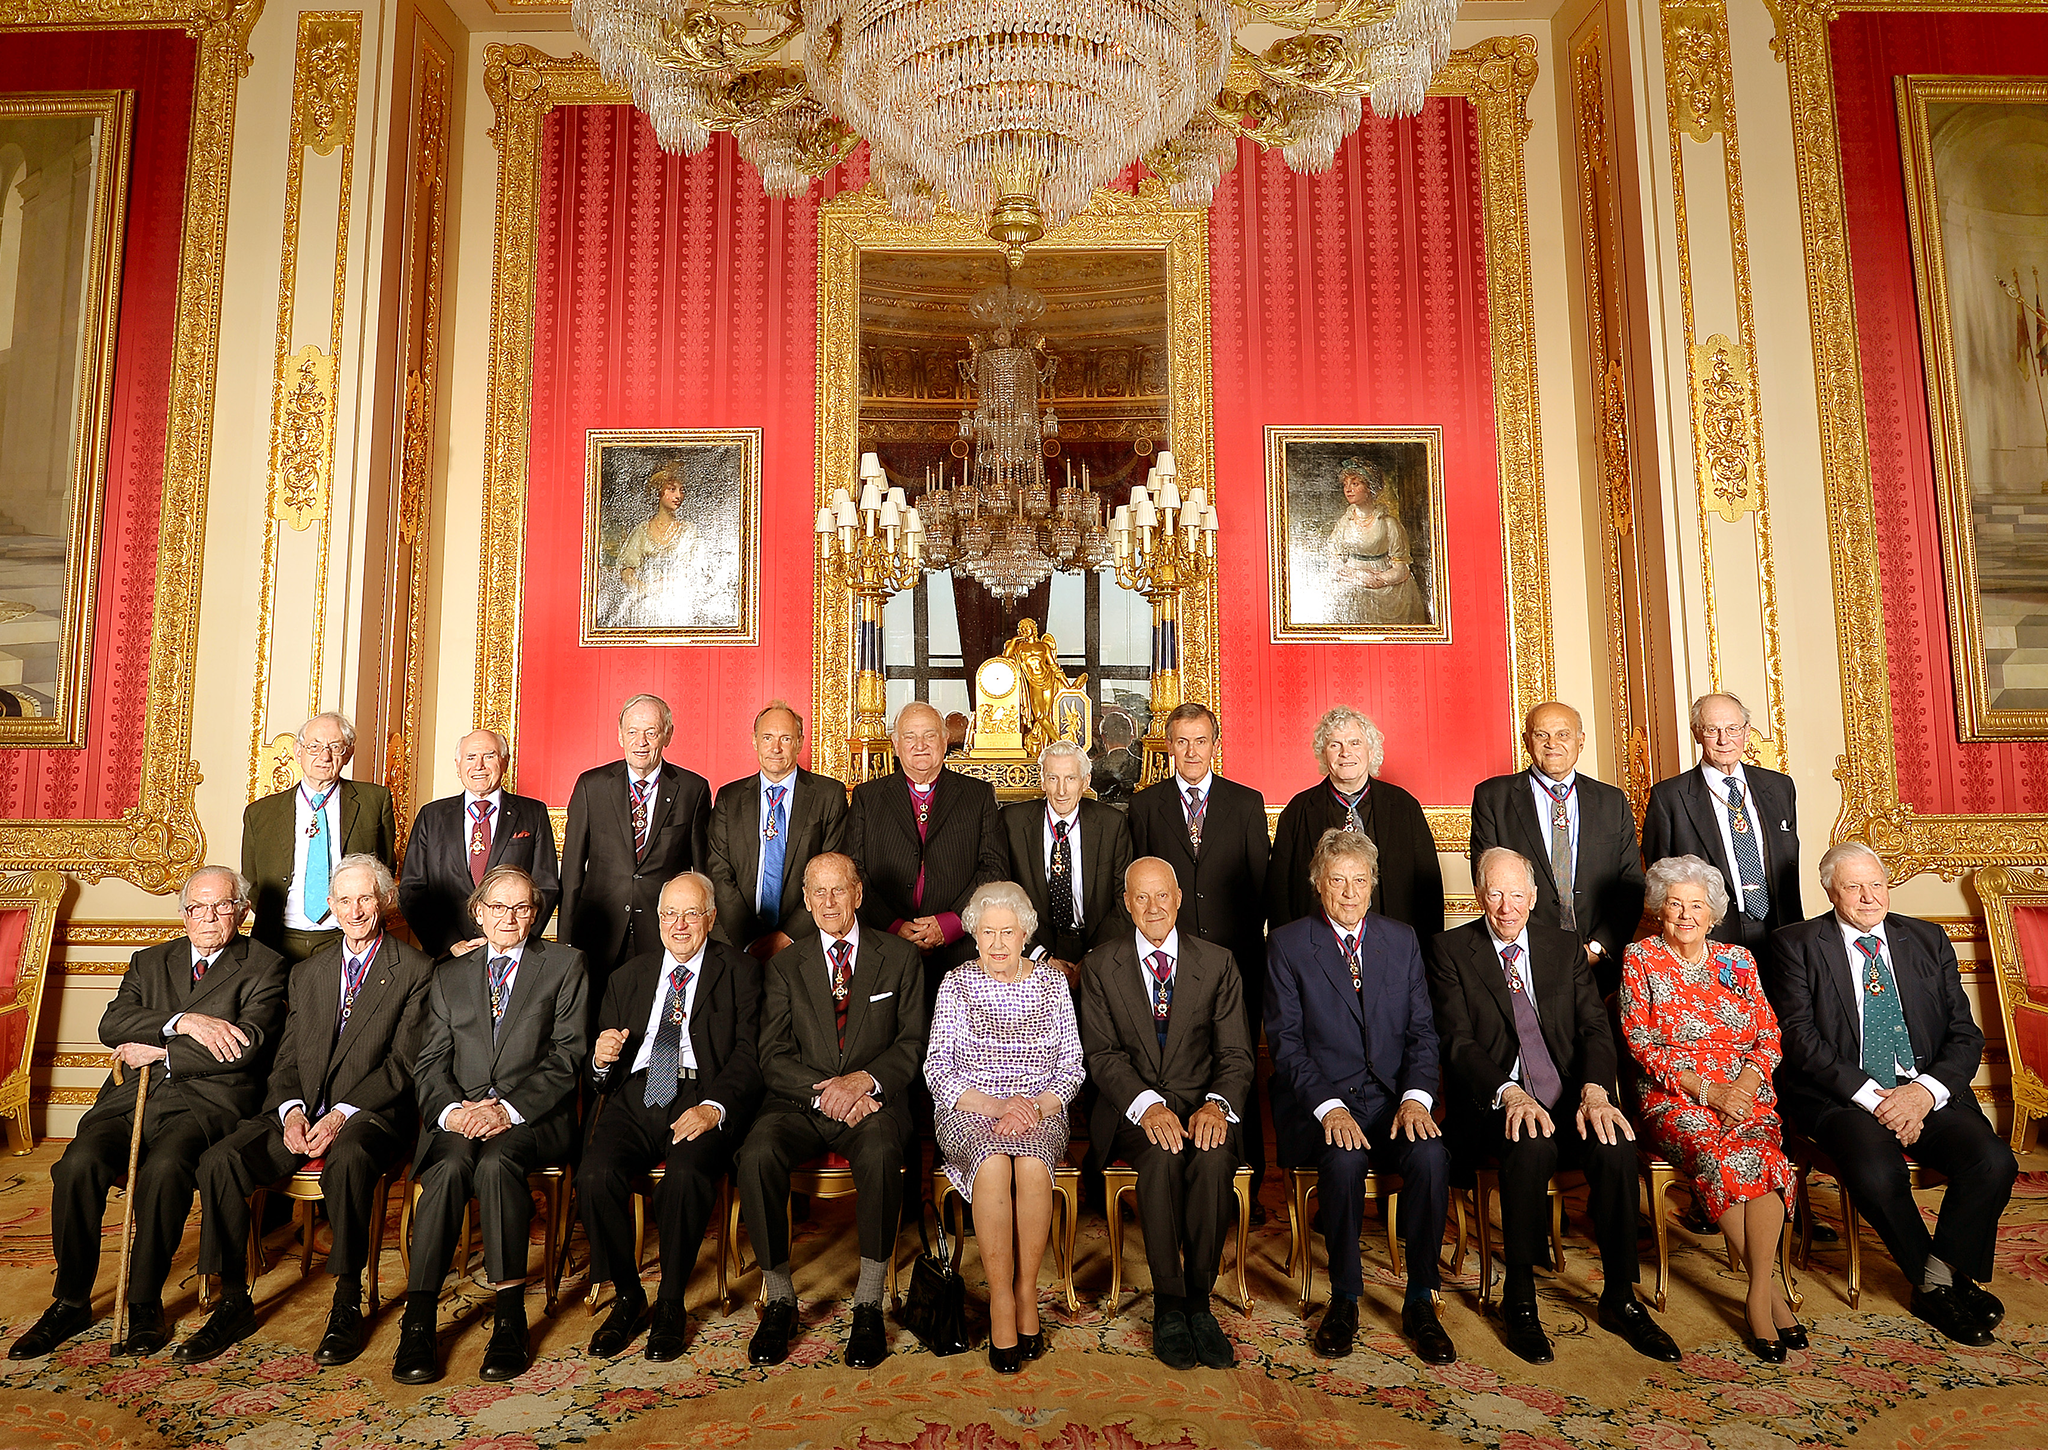 Queen Elizabeth II with members of the Order of Merit